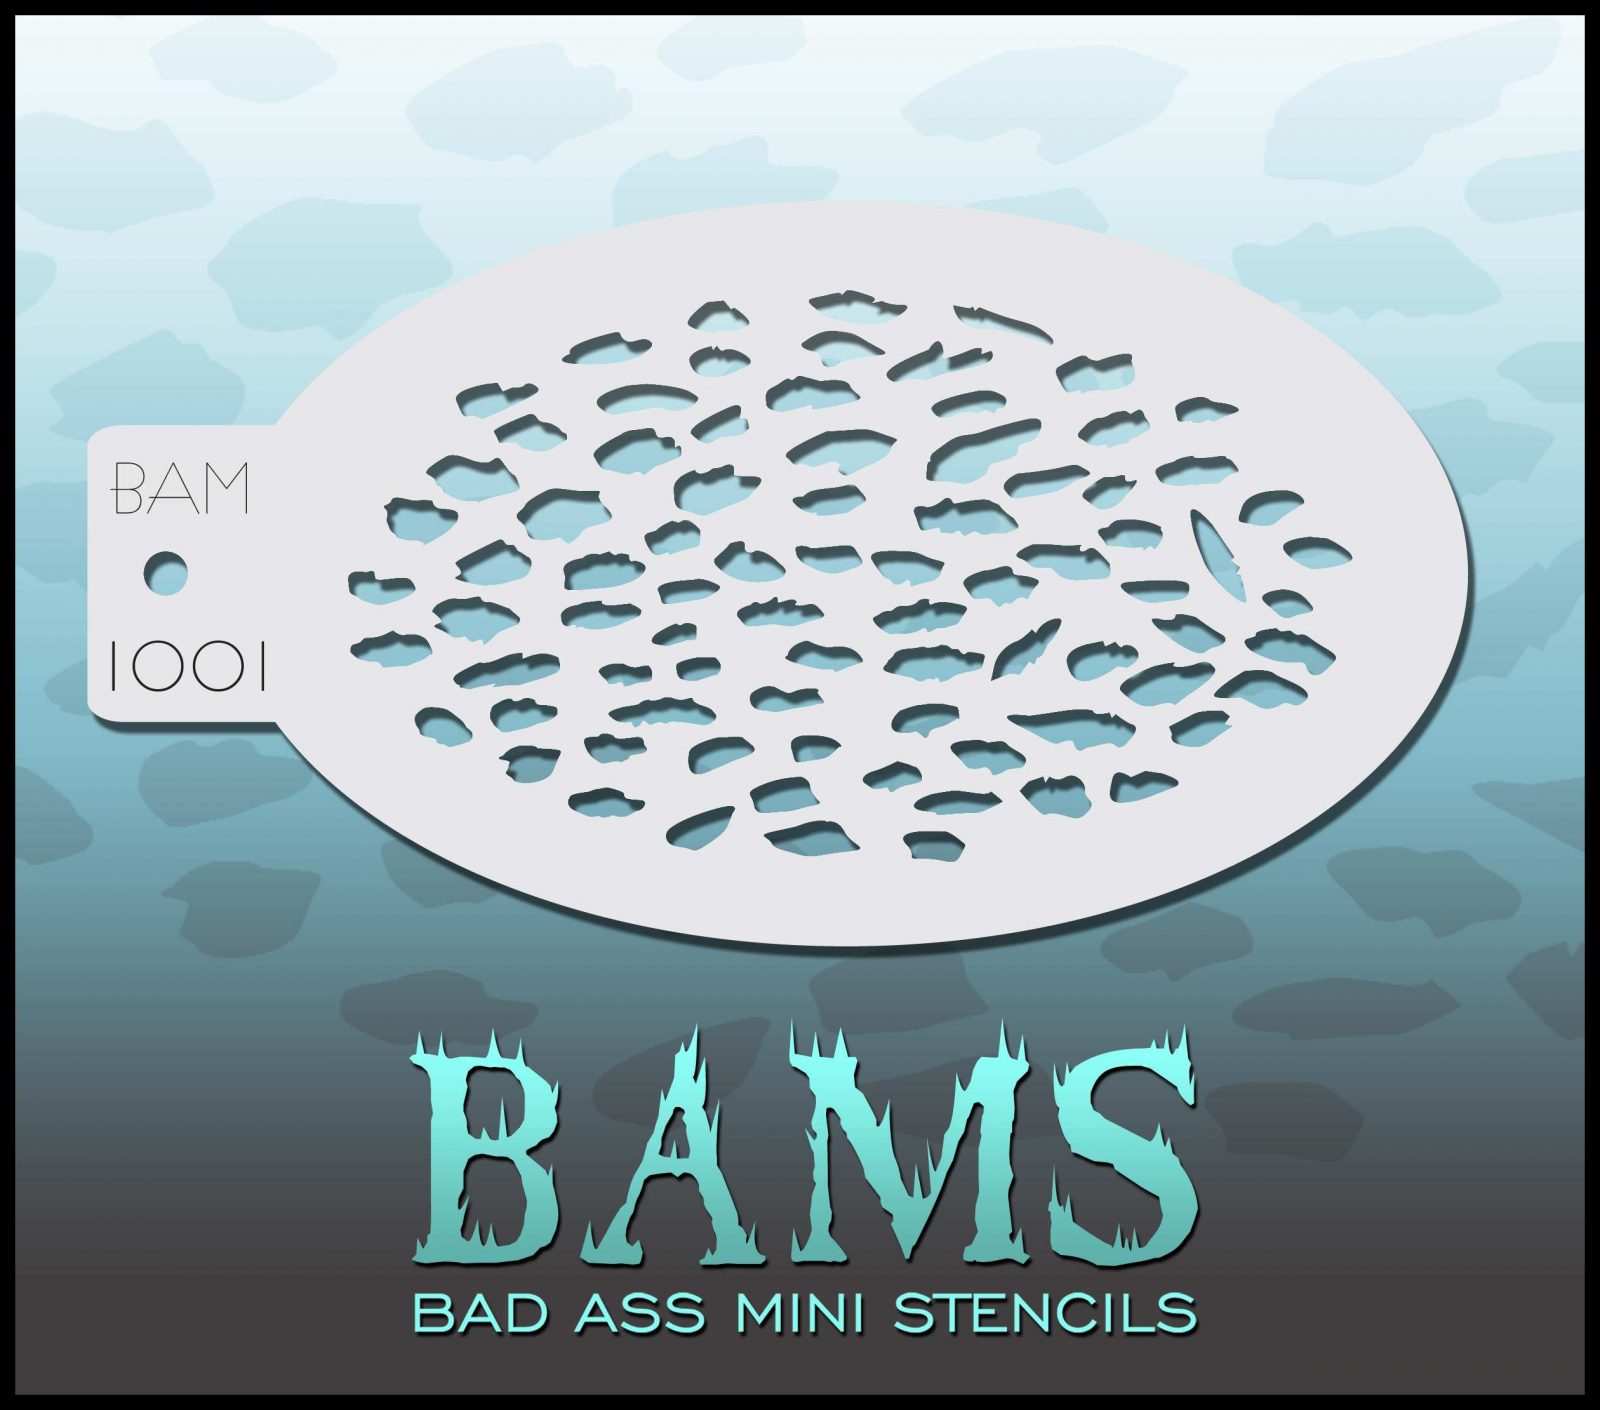 Bad Ass Stencils - BAM 1001 - Stencil Cheetah print